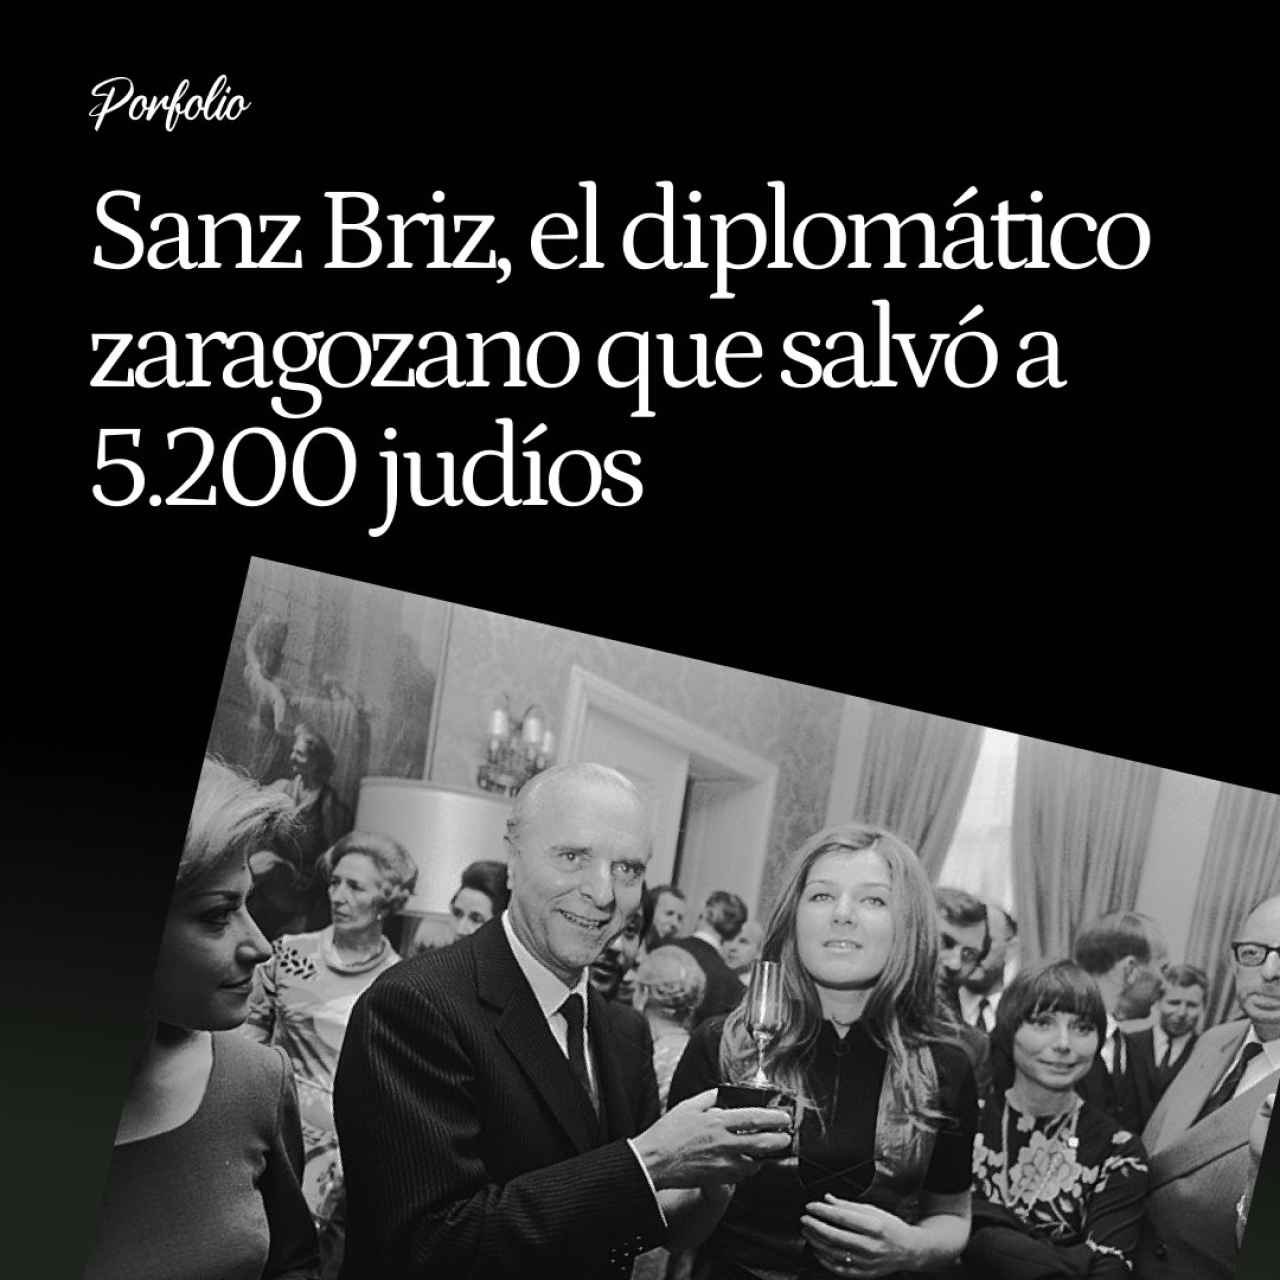 El 'Ángel de Budapest' Sanz Briz, el diplomático zaragozano que salvó a 5.200 judíos engañando a los nazis con falsos salvoconductos